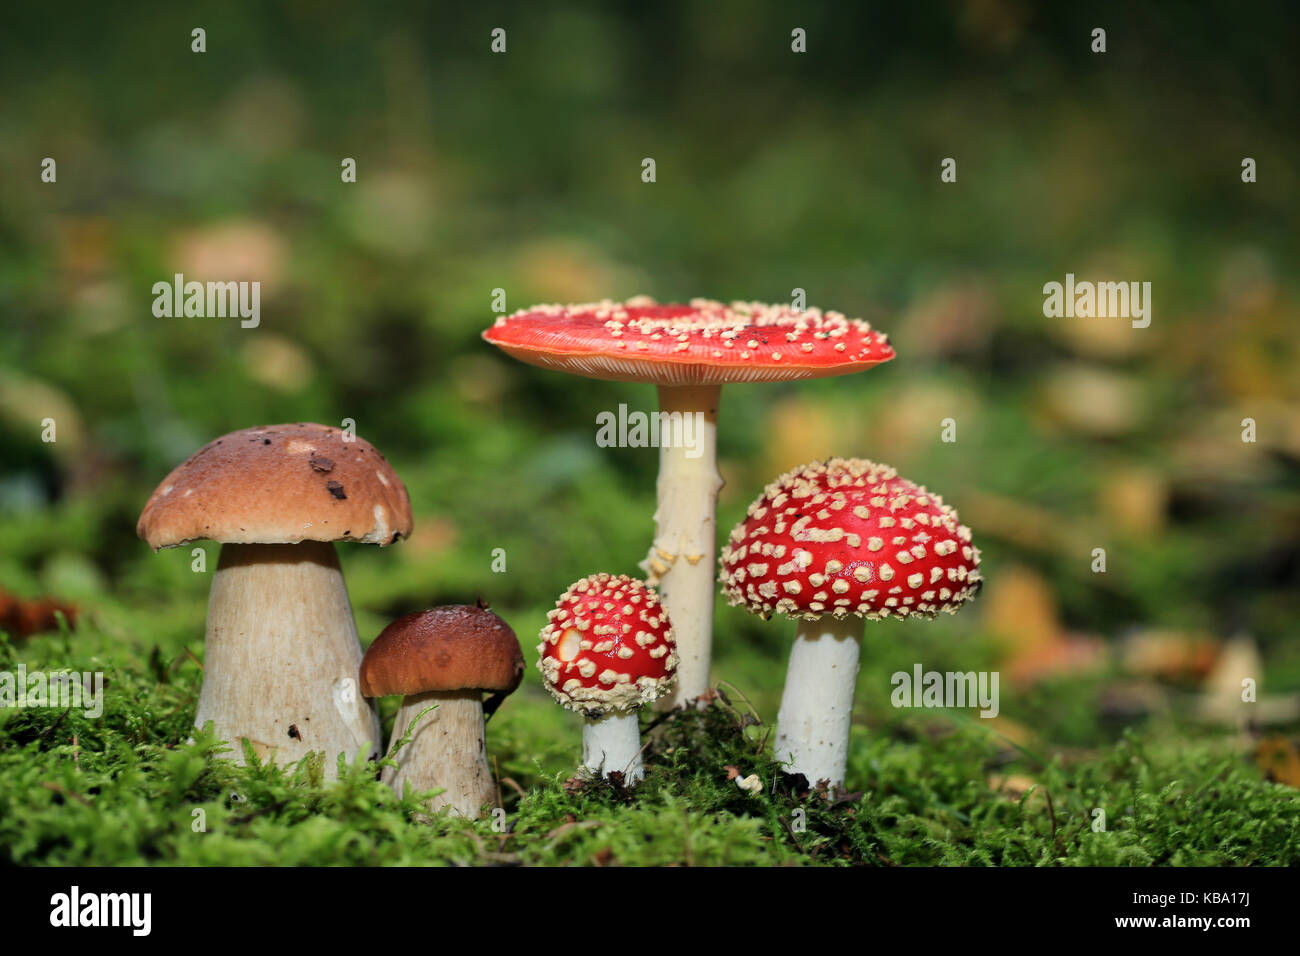 Velenoso amanita muscaria e commestibile funghi porcini nel bosco Foto Stock